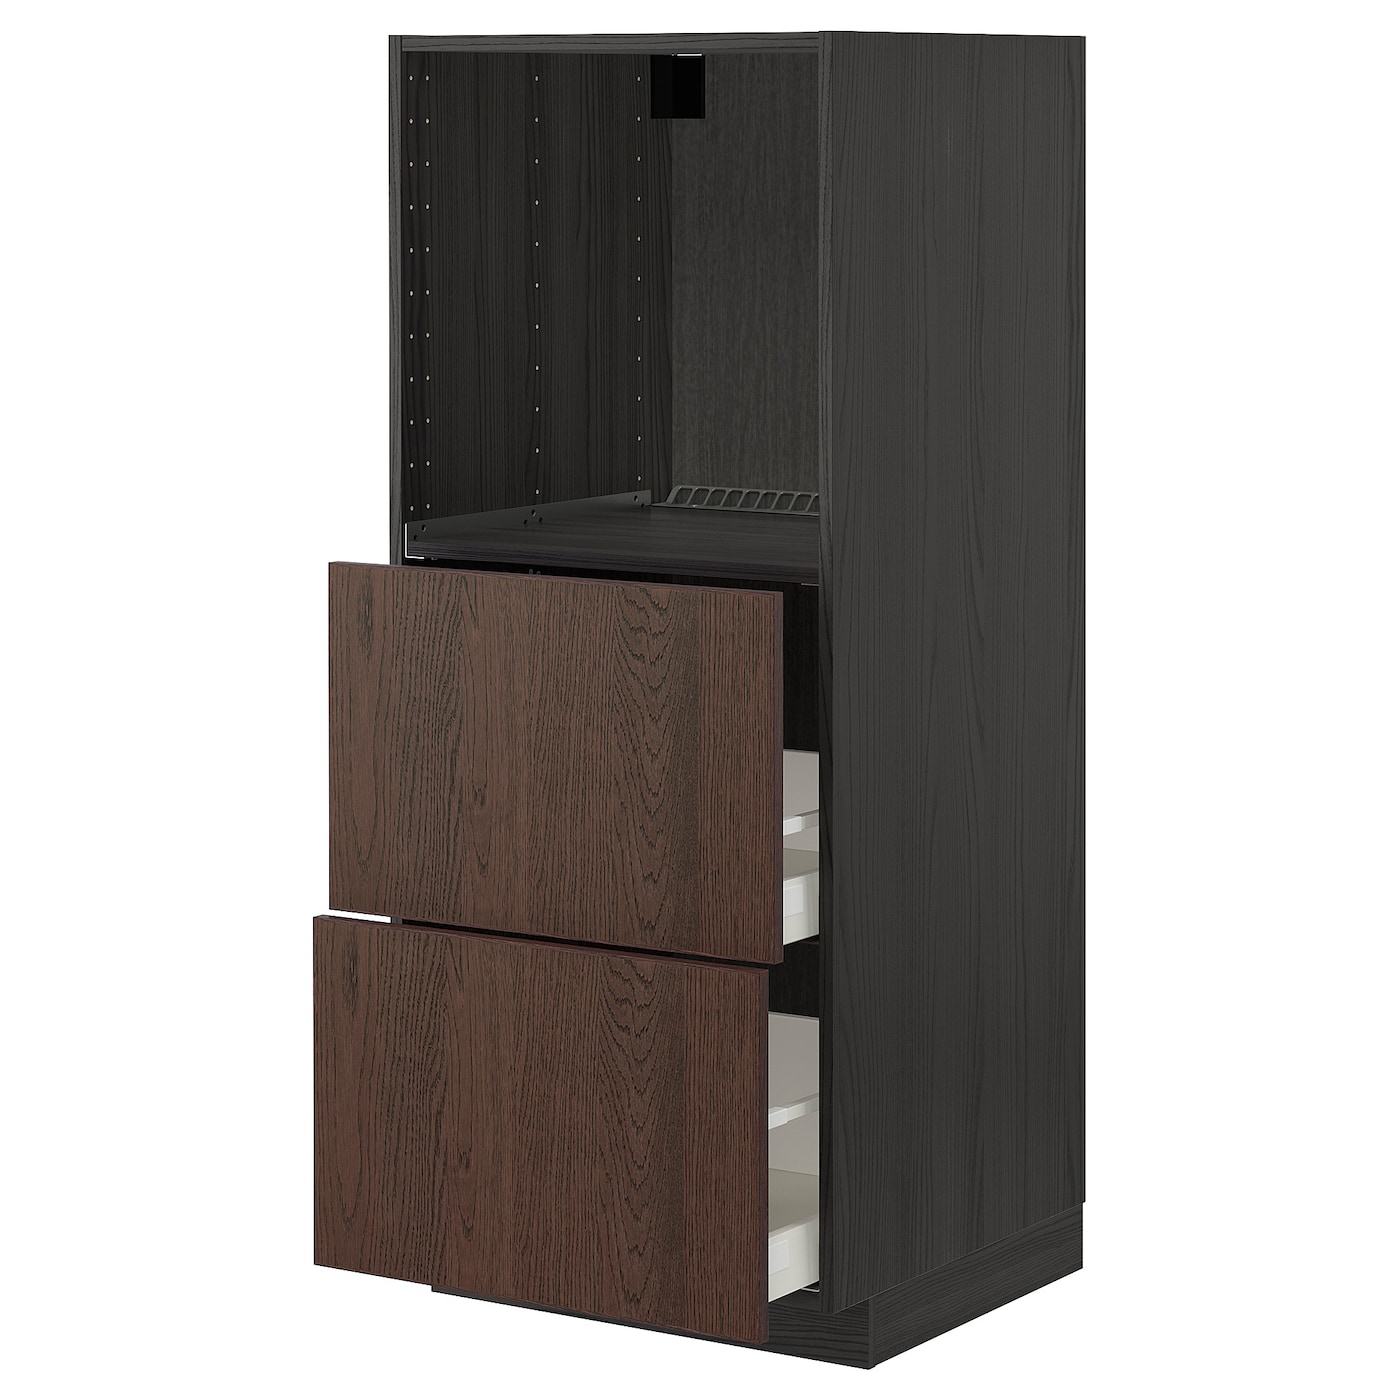 Напольный шкаф - IKEA METOD MAXIMERA, 148x62x60см, коричневый/черный, МЕТОД МАКСИМЕРА ИКЕА